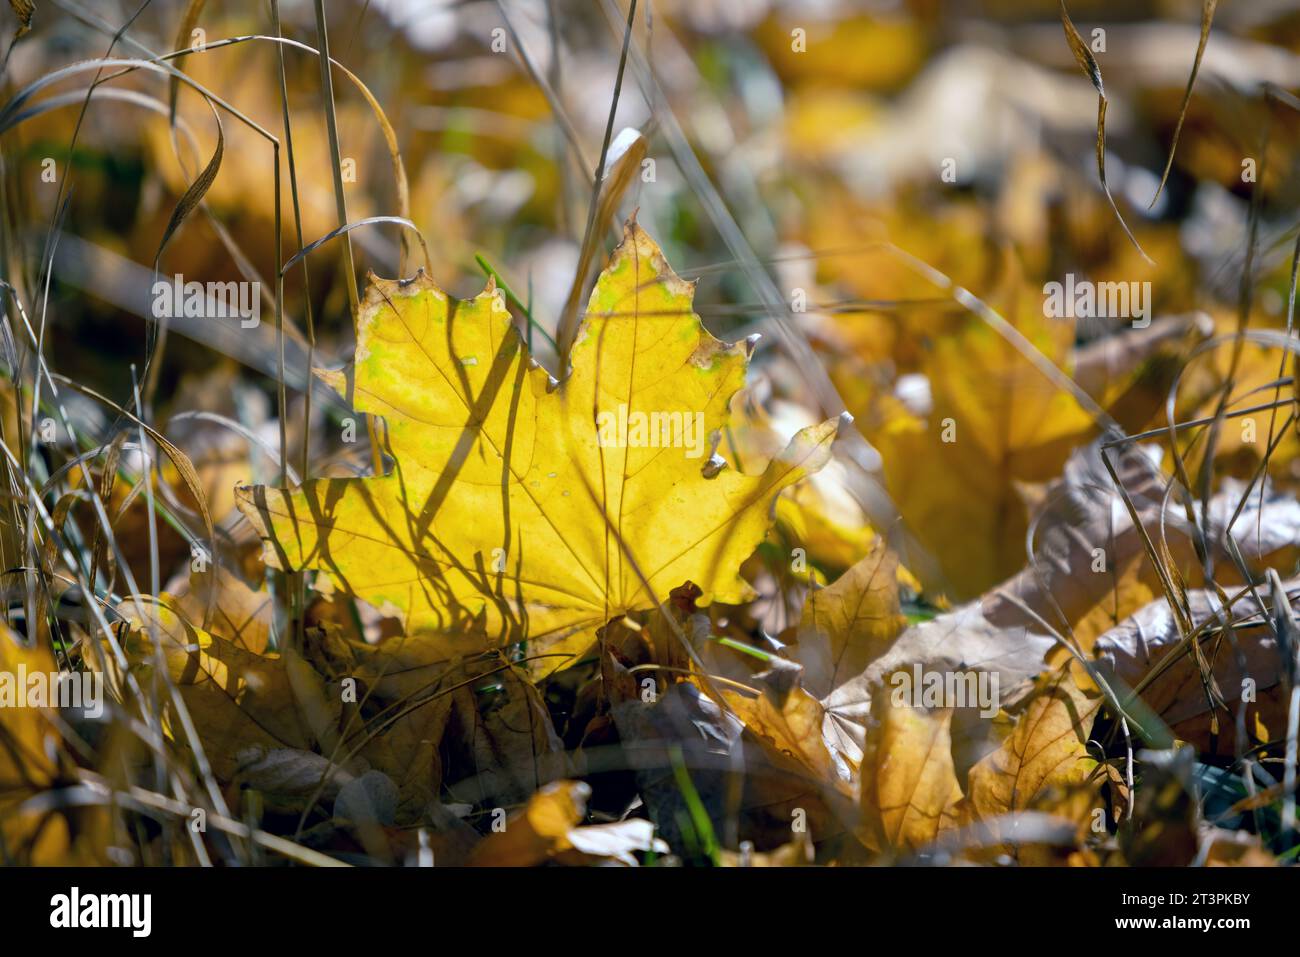 Wunderschöner, unscharfer Herbsthintergrund. Gelbe Ahornblätter sind im Licht der Sonnenstrahlen zwischen trockenem Gras im Fokus. Schöne helle Farben des Herbstes Stockfoto